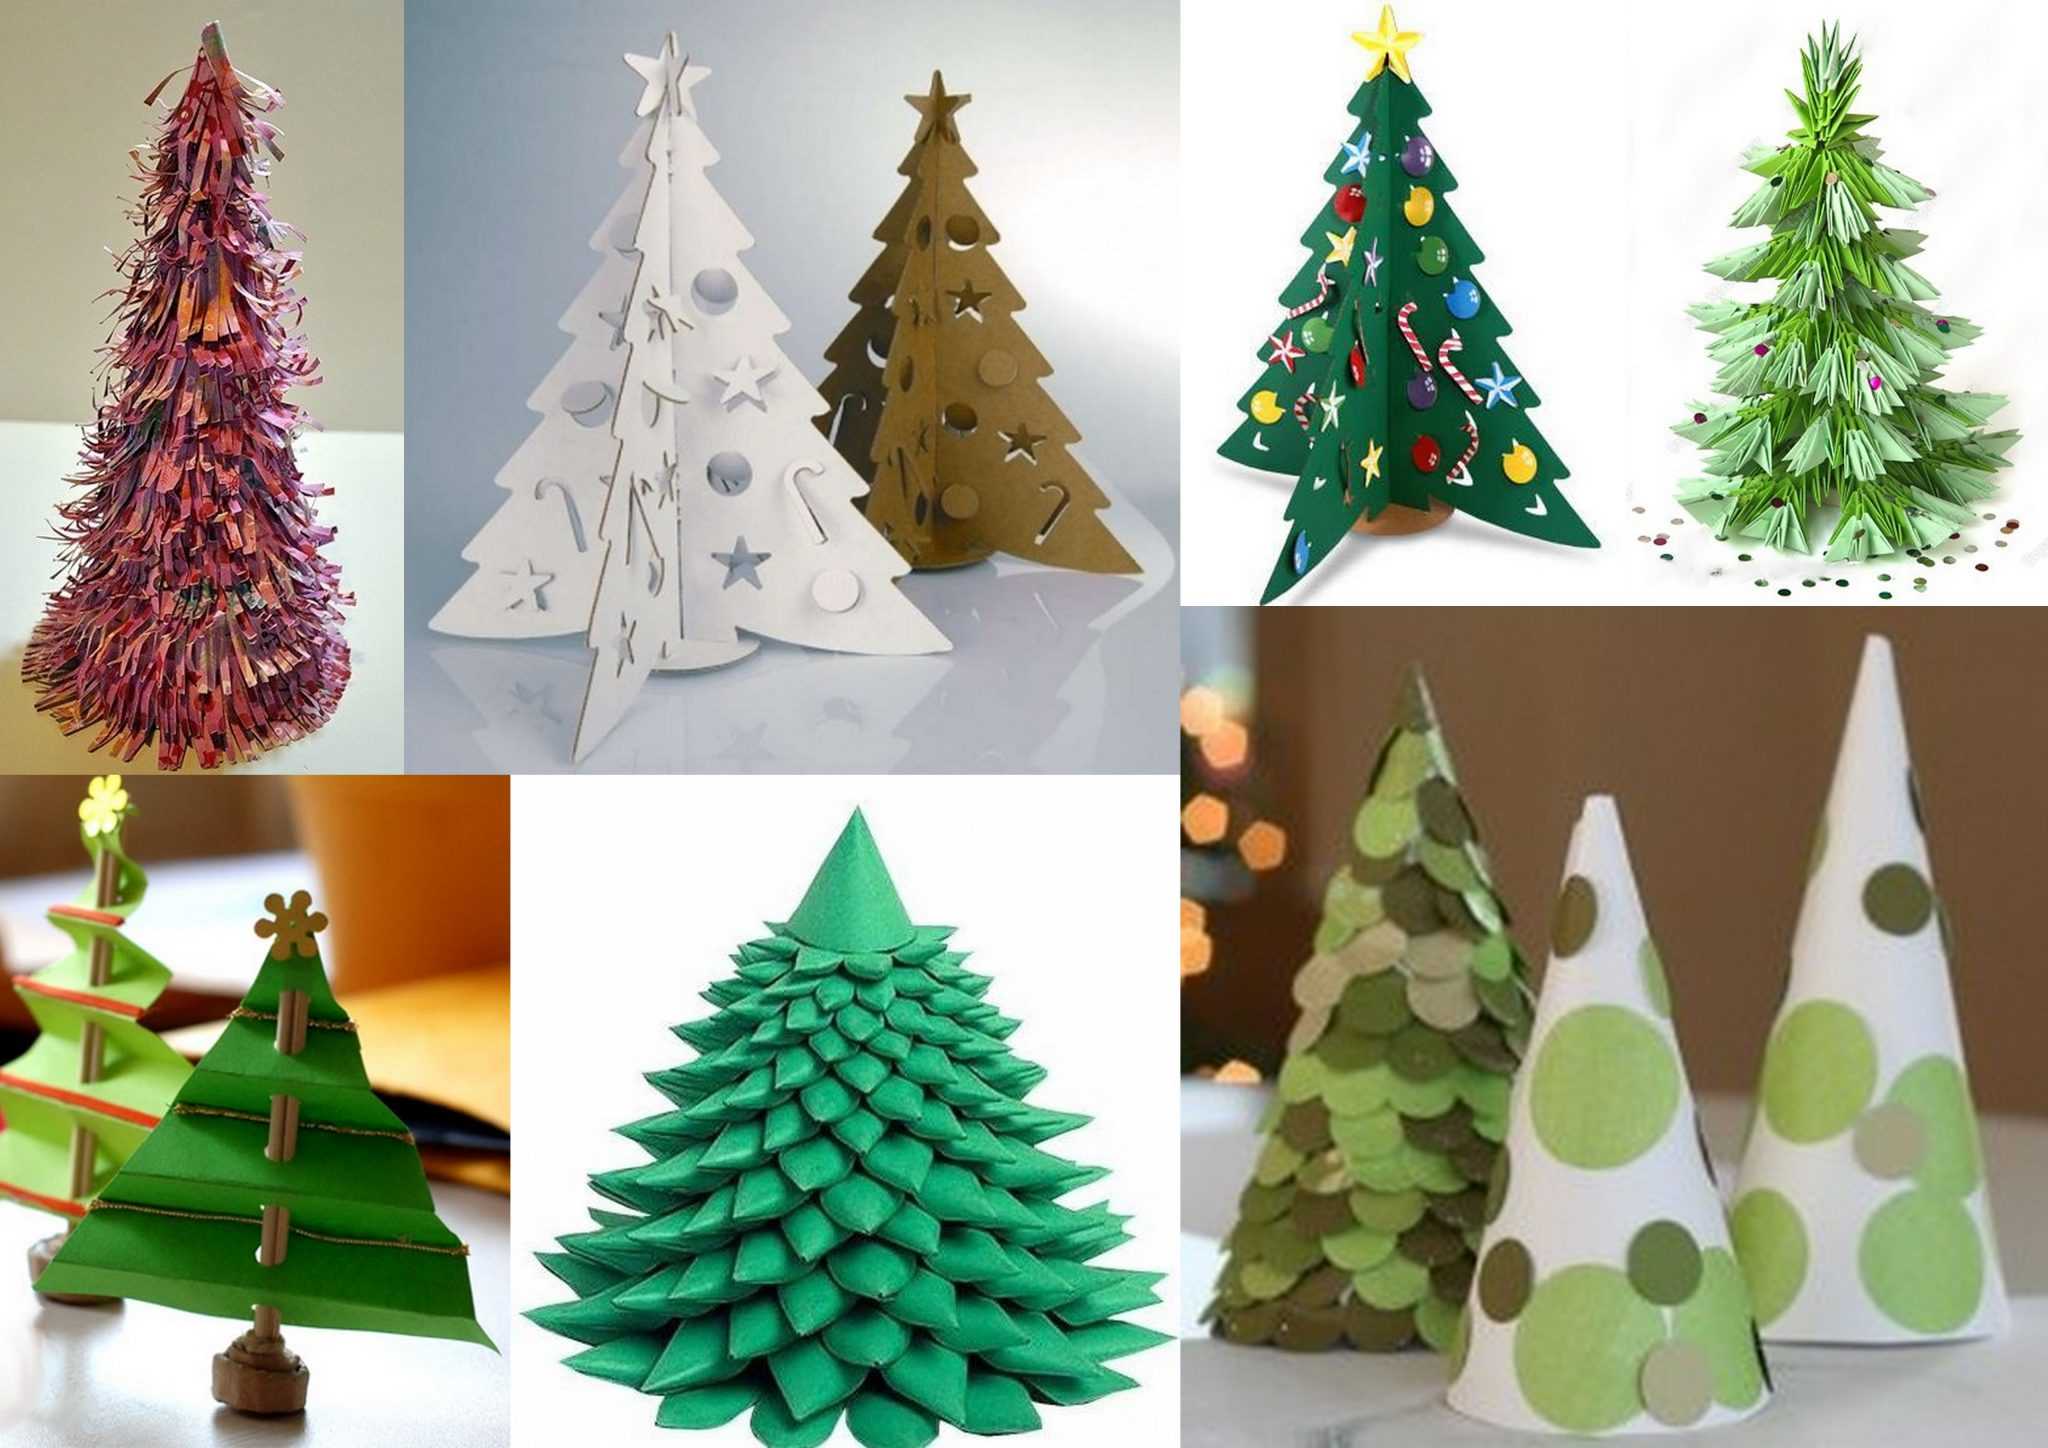 Как сделать конус из бумаги, картона для елки: фото пошагово